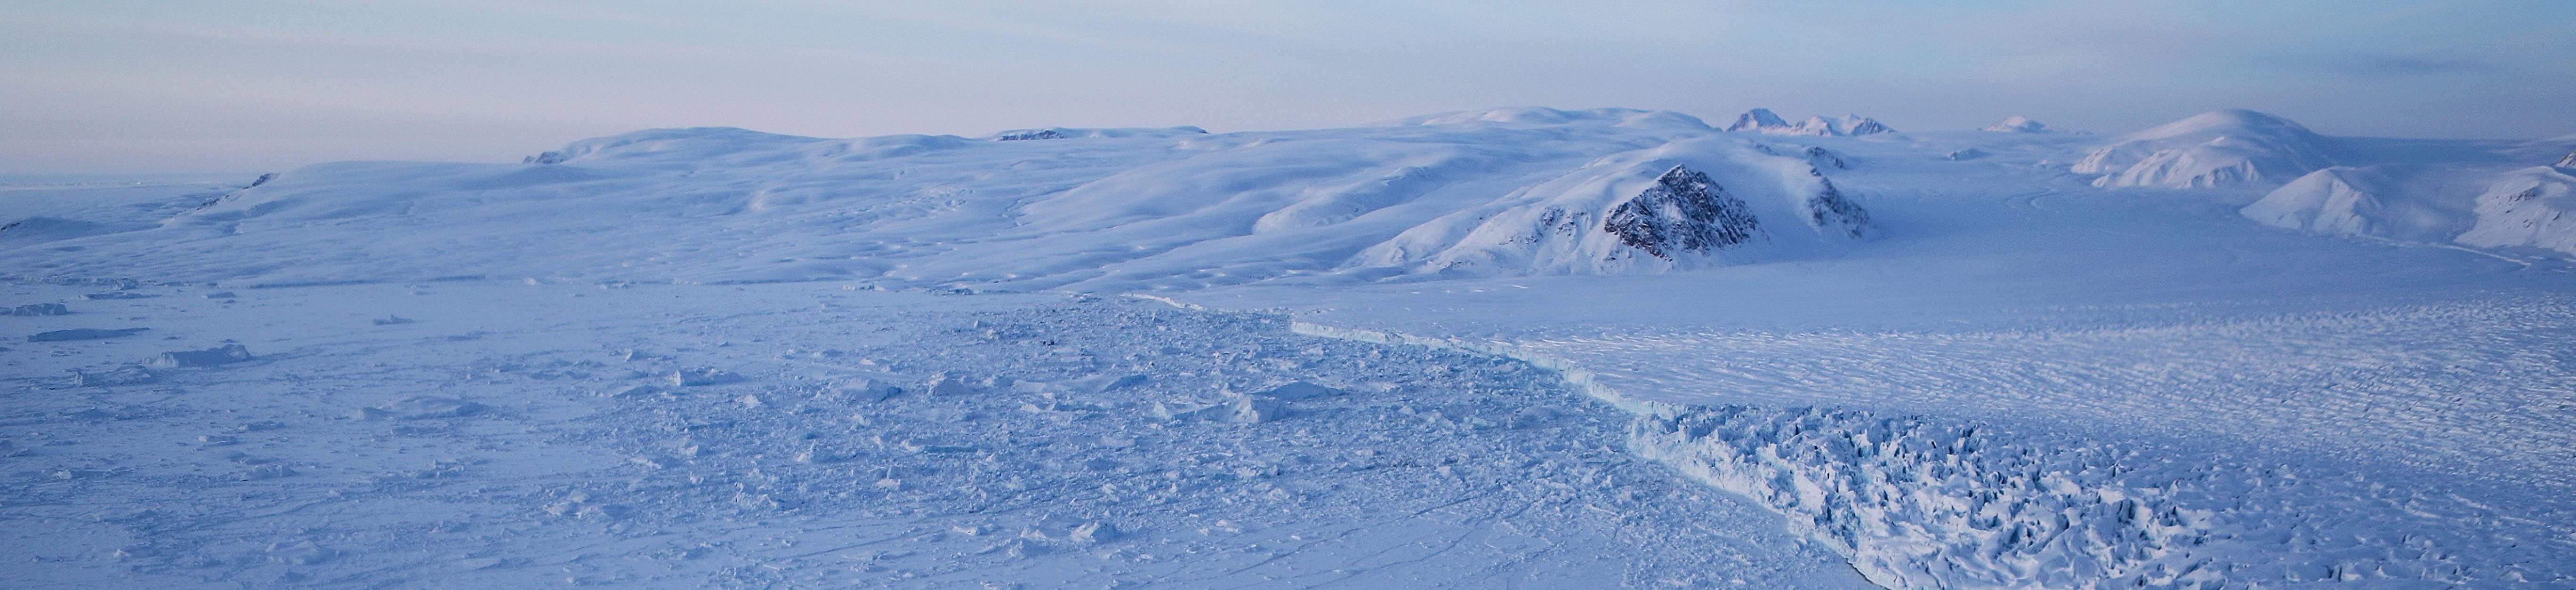 arctic ocean sea ice